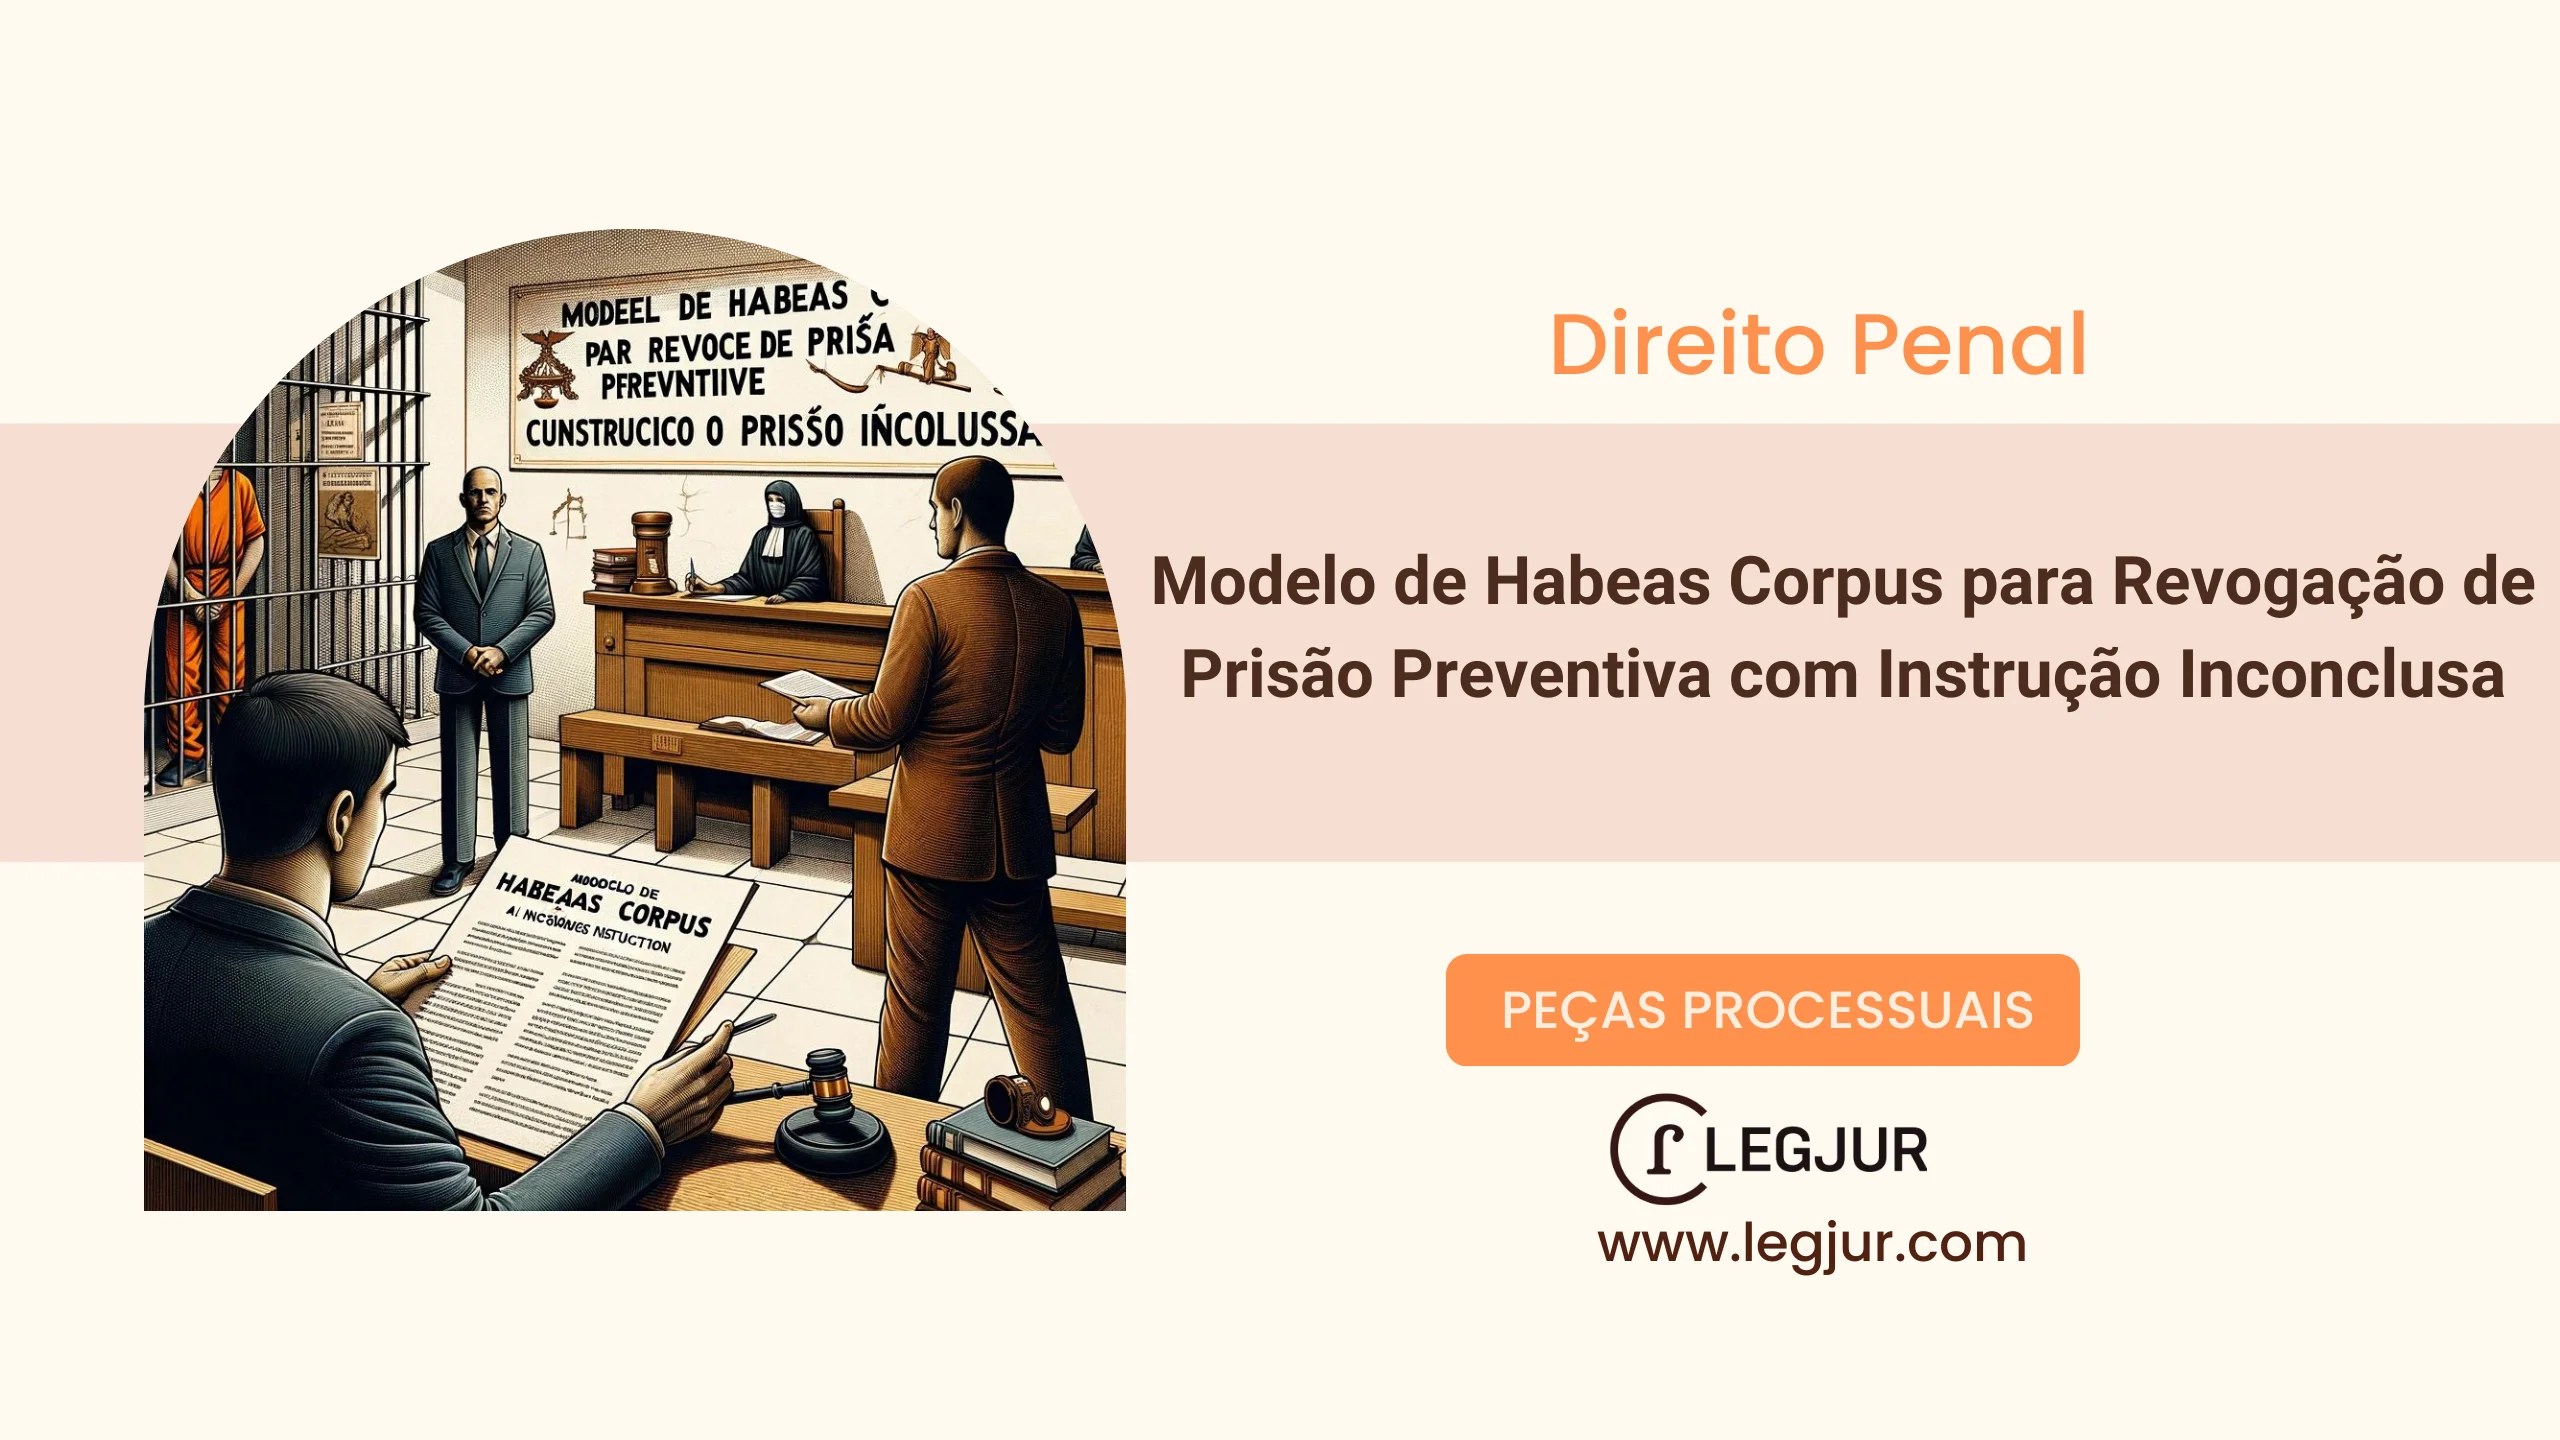 Modelo de Habeas Corpus para Revogação de Prisão Preventiva com Instrução Inconclusa